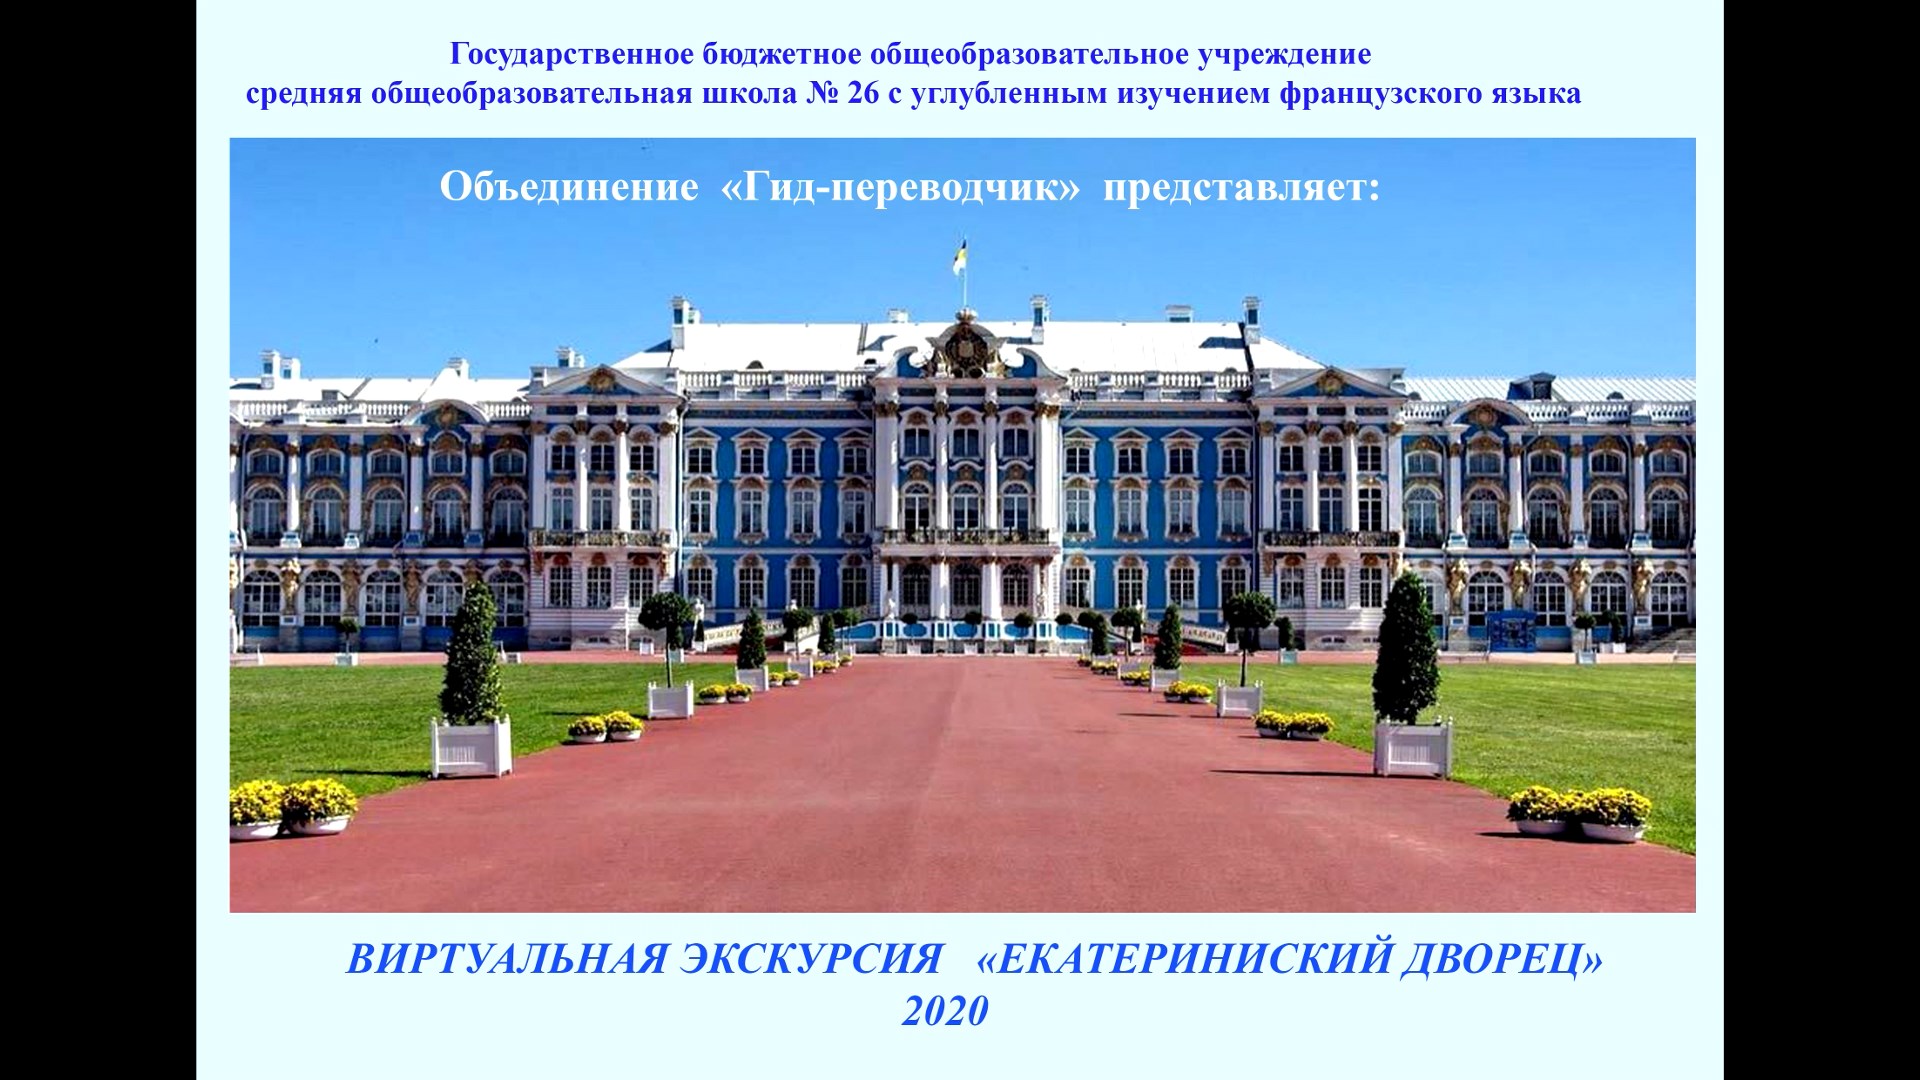 Обложка Видео-экскурсия «Екатерининский дворец» на английском языке с титрами на русском языке